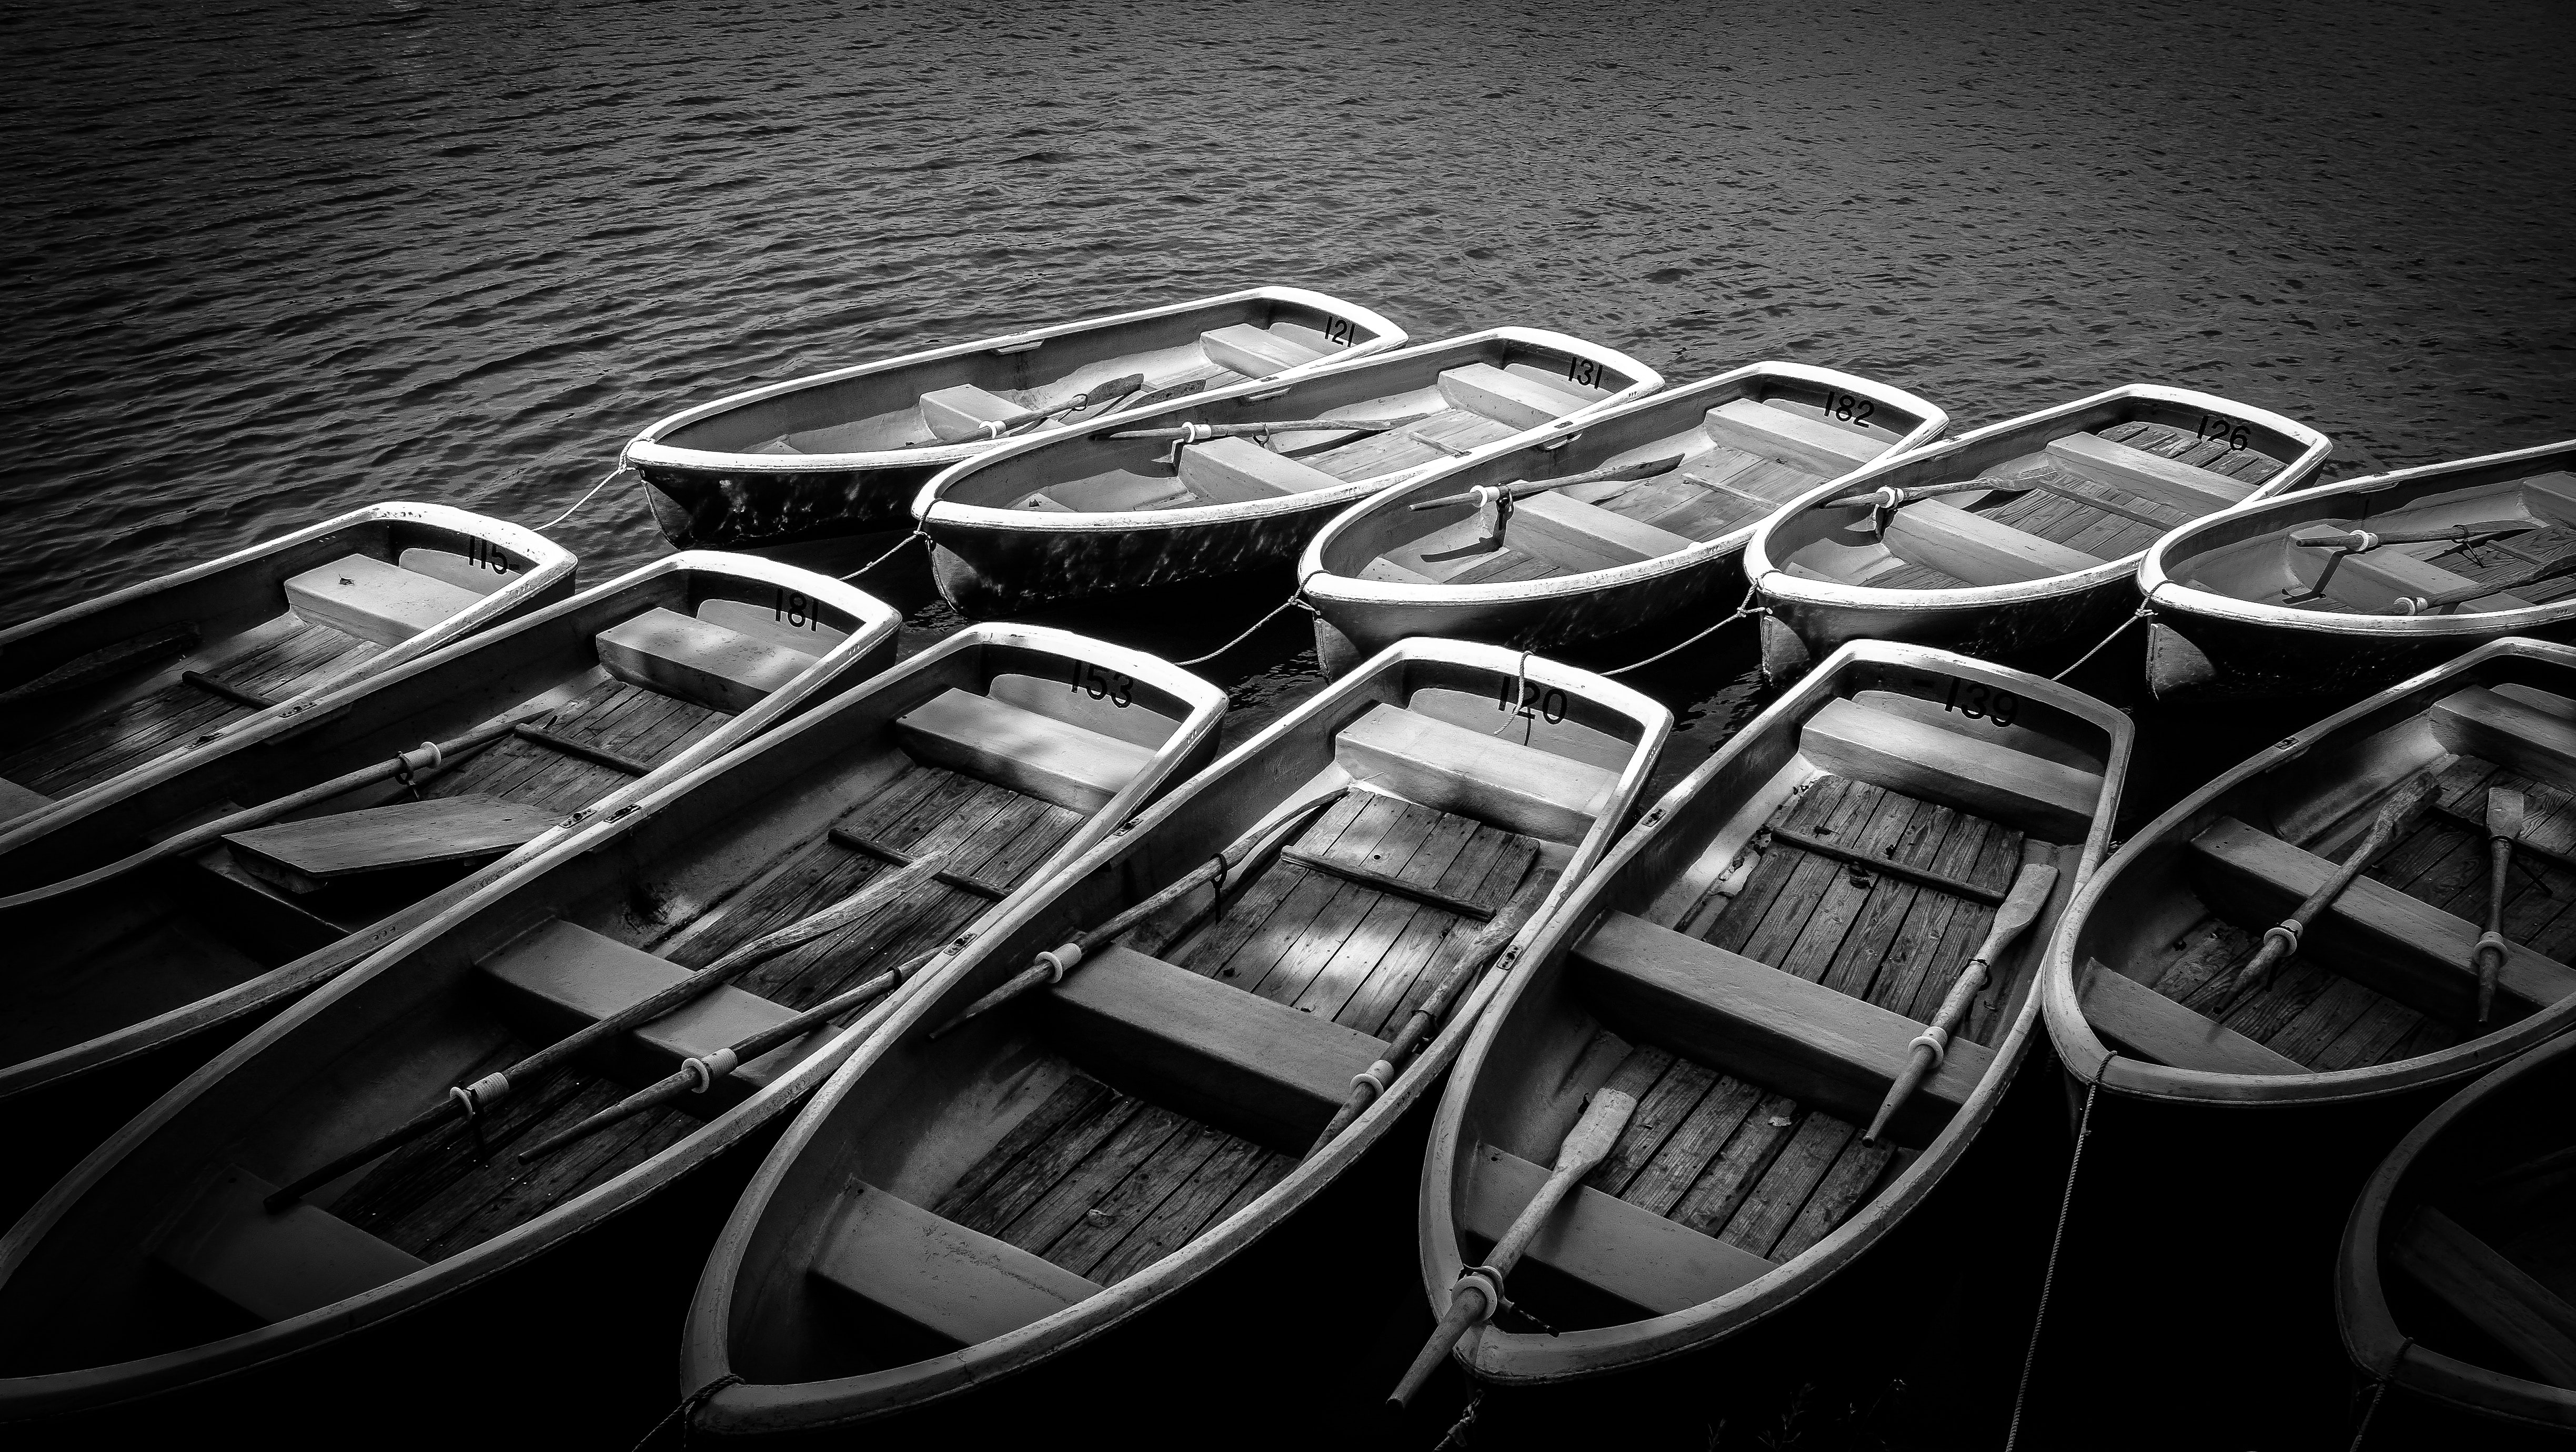 18/02/2019 - Lac d'Annecy : des bateaux-navettes pour l'été - Actualités